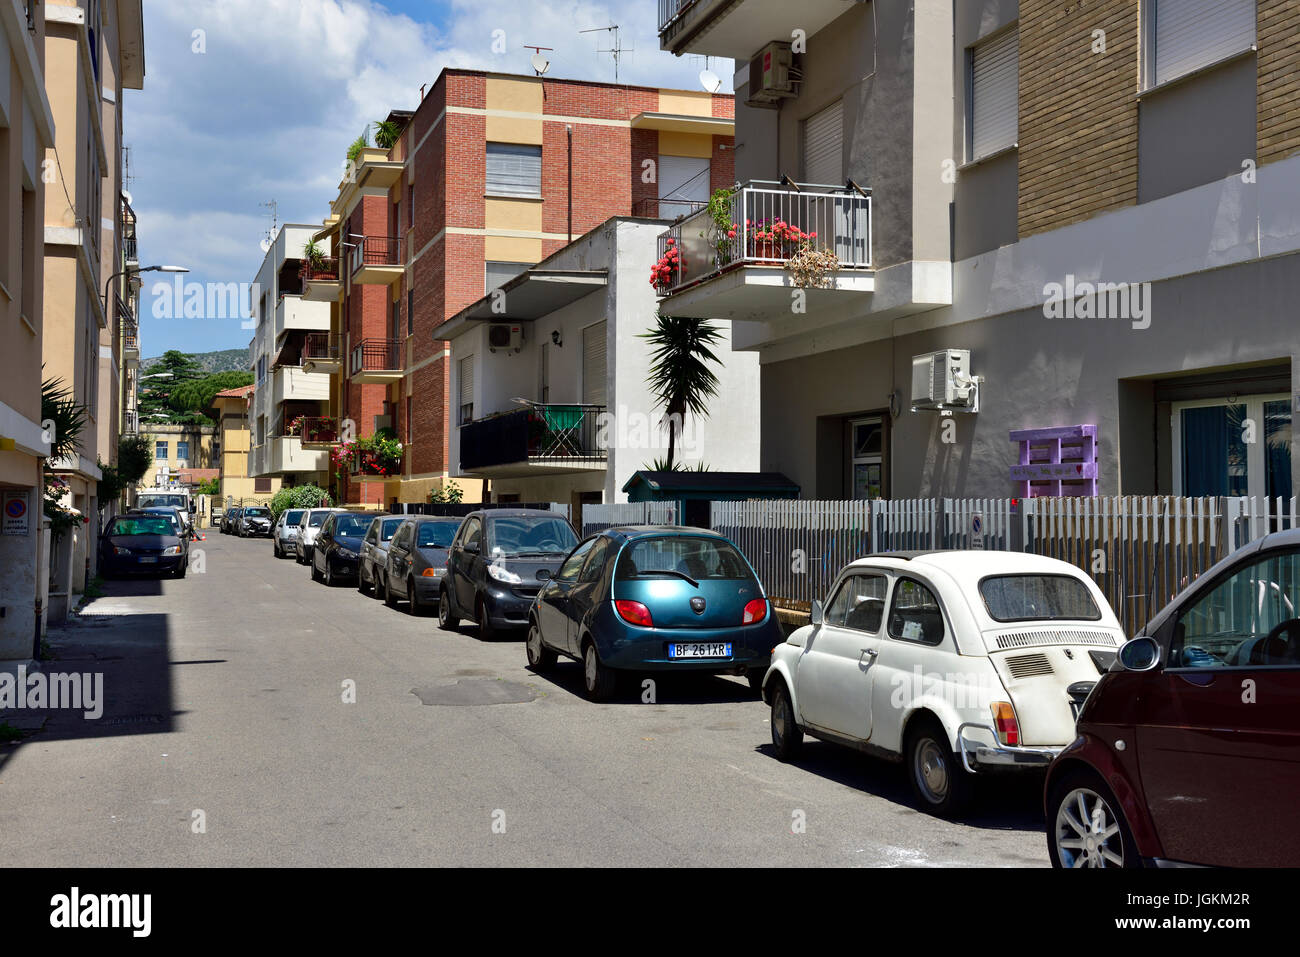 Tipici appartamenti ordinaria / appartamenti lungo la strada nel centro di Terracina, Italia Foto Stock